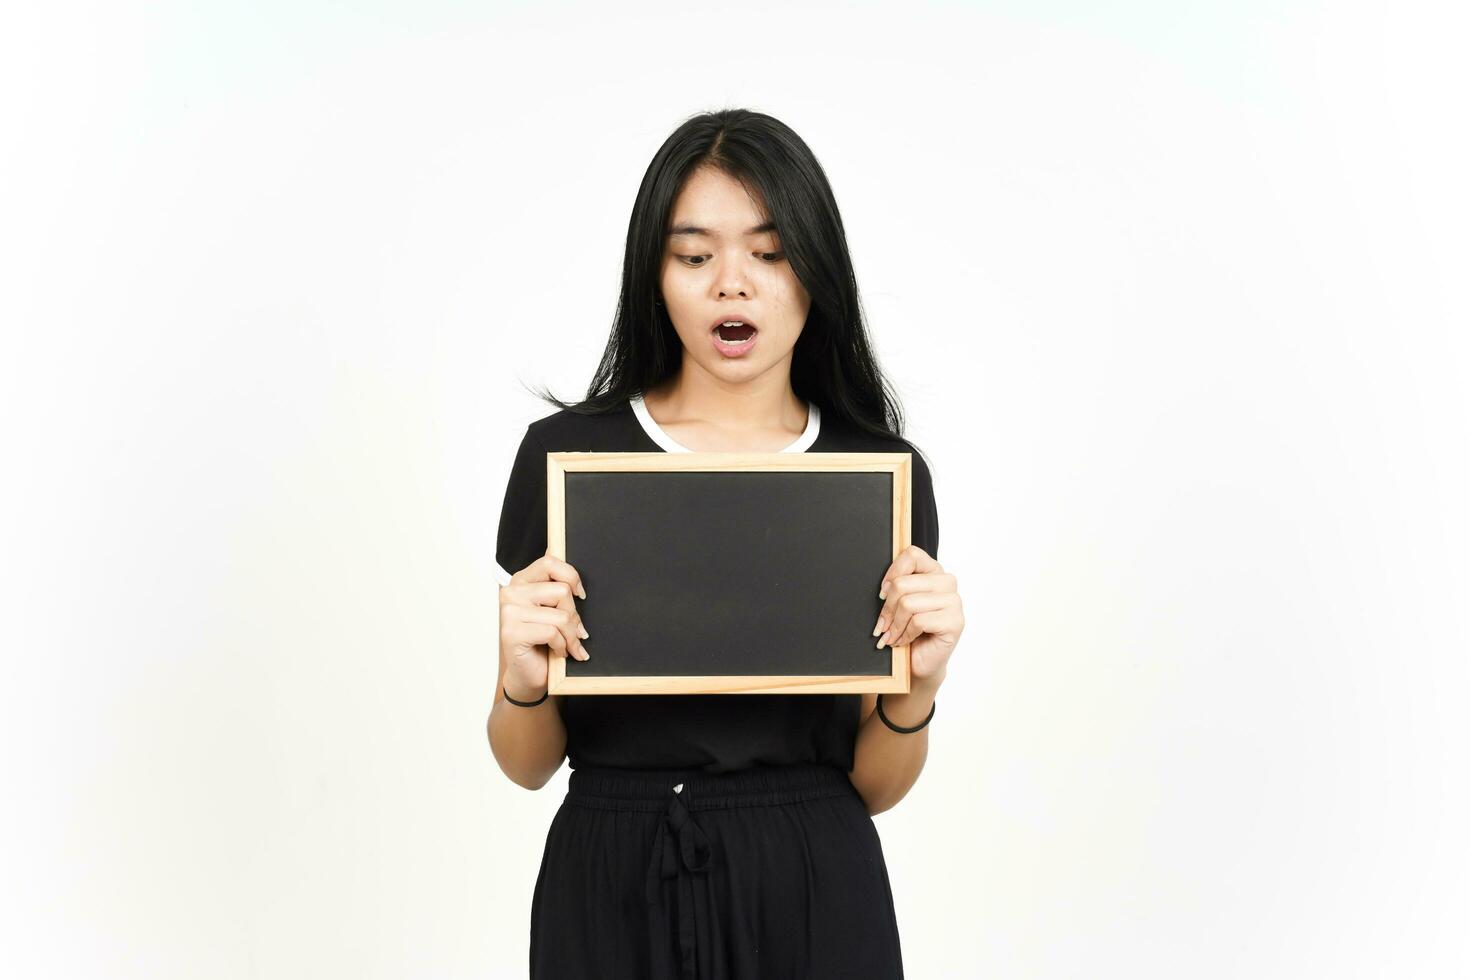 zeigen, präsentieren und halten leer Tafel mit schockiert Gesicht von schön asiatisch Frau foto